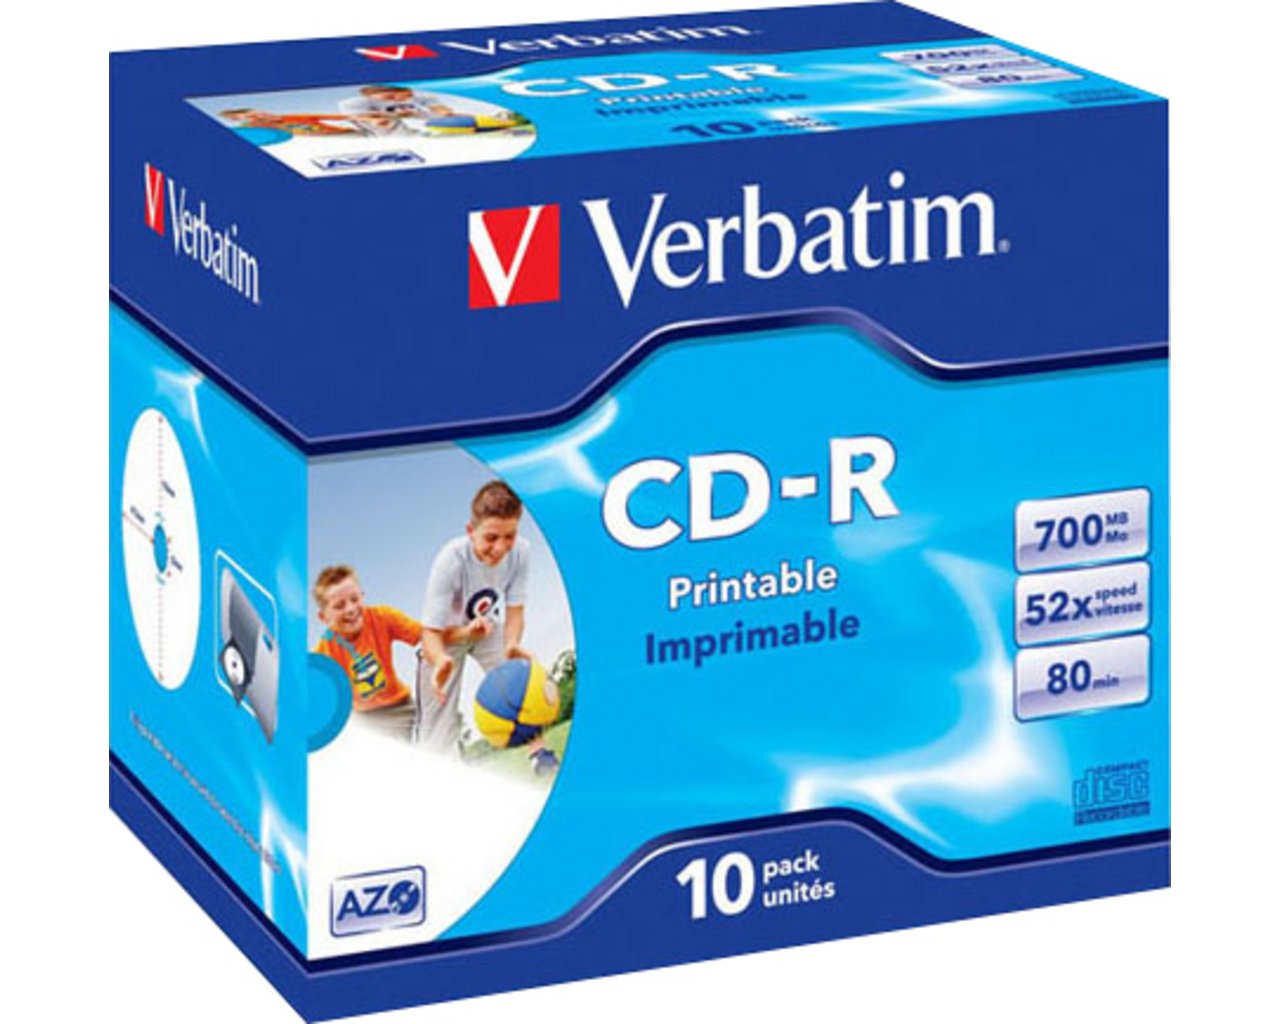 Verbatim DataLifePlus CD-R x 10 700 Mo